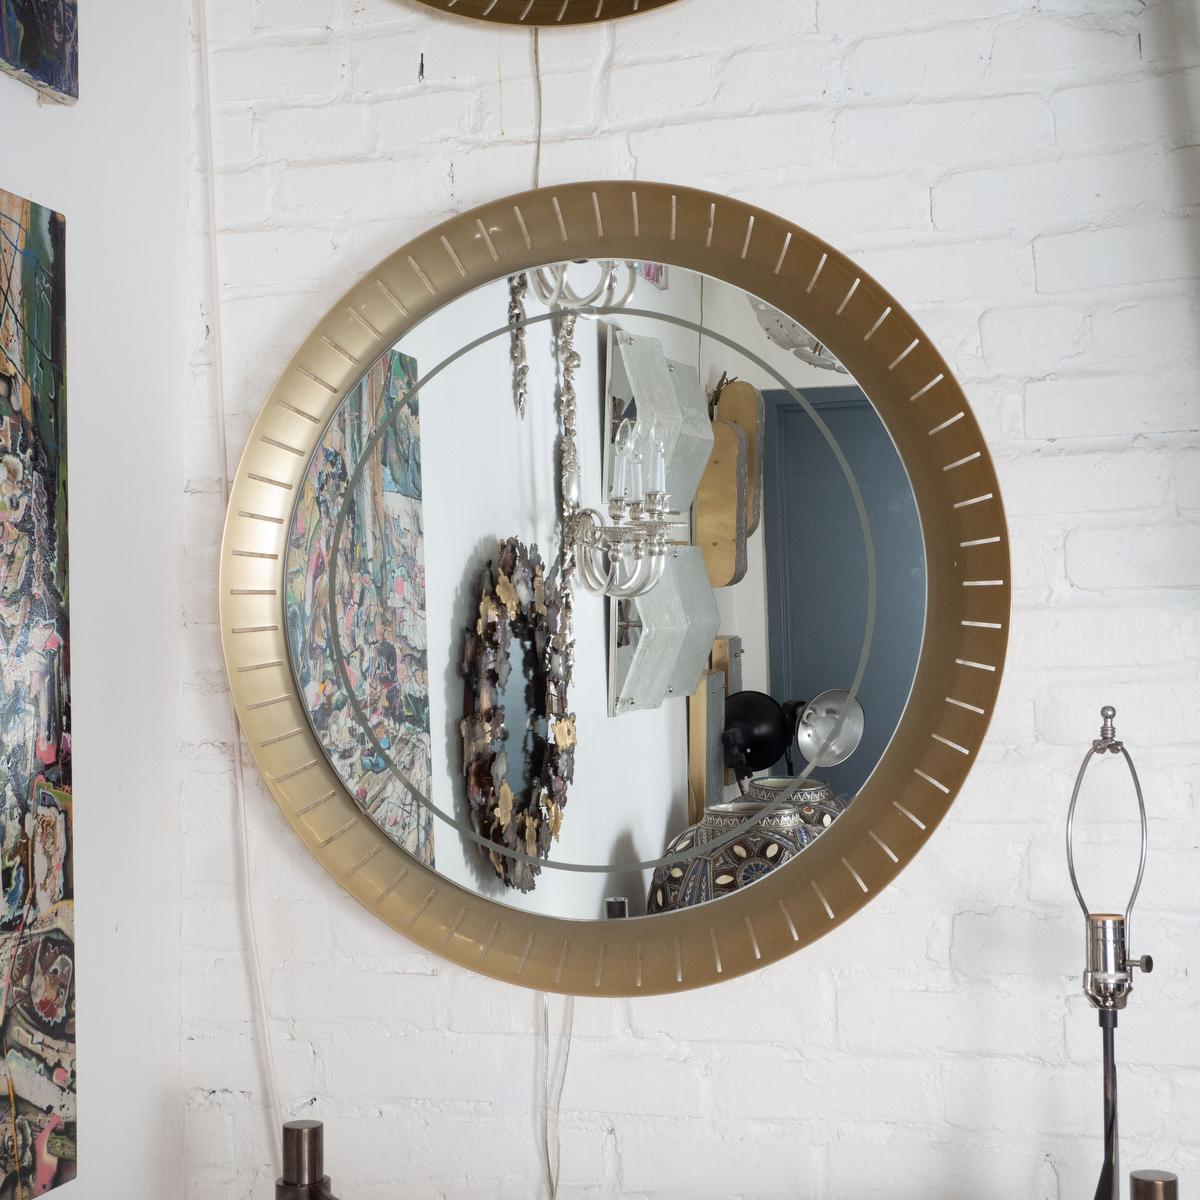 Miroir perforé, concave en laiton, rétro-éclairé par Hillebrand dans le style de Stilnovo. Le miroir a été remplacé récemment avec des garnitures givrées. Utilise une ampoule fluorescente de type anneau.